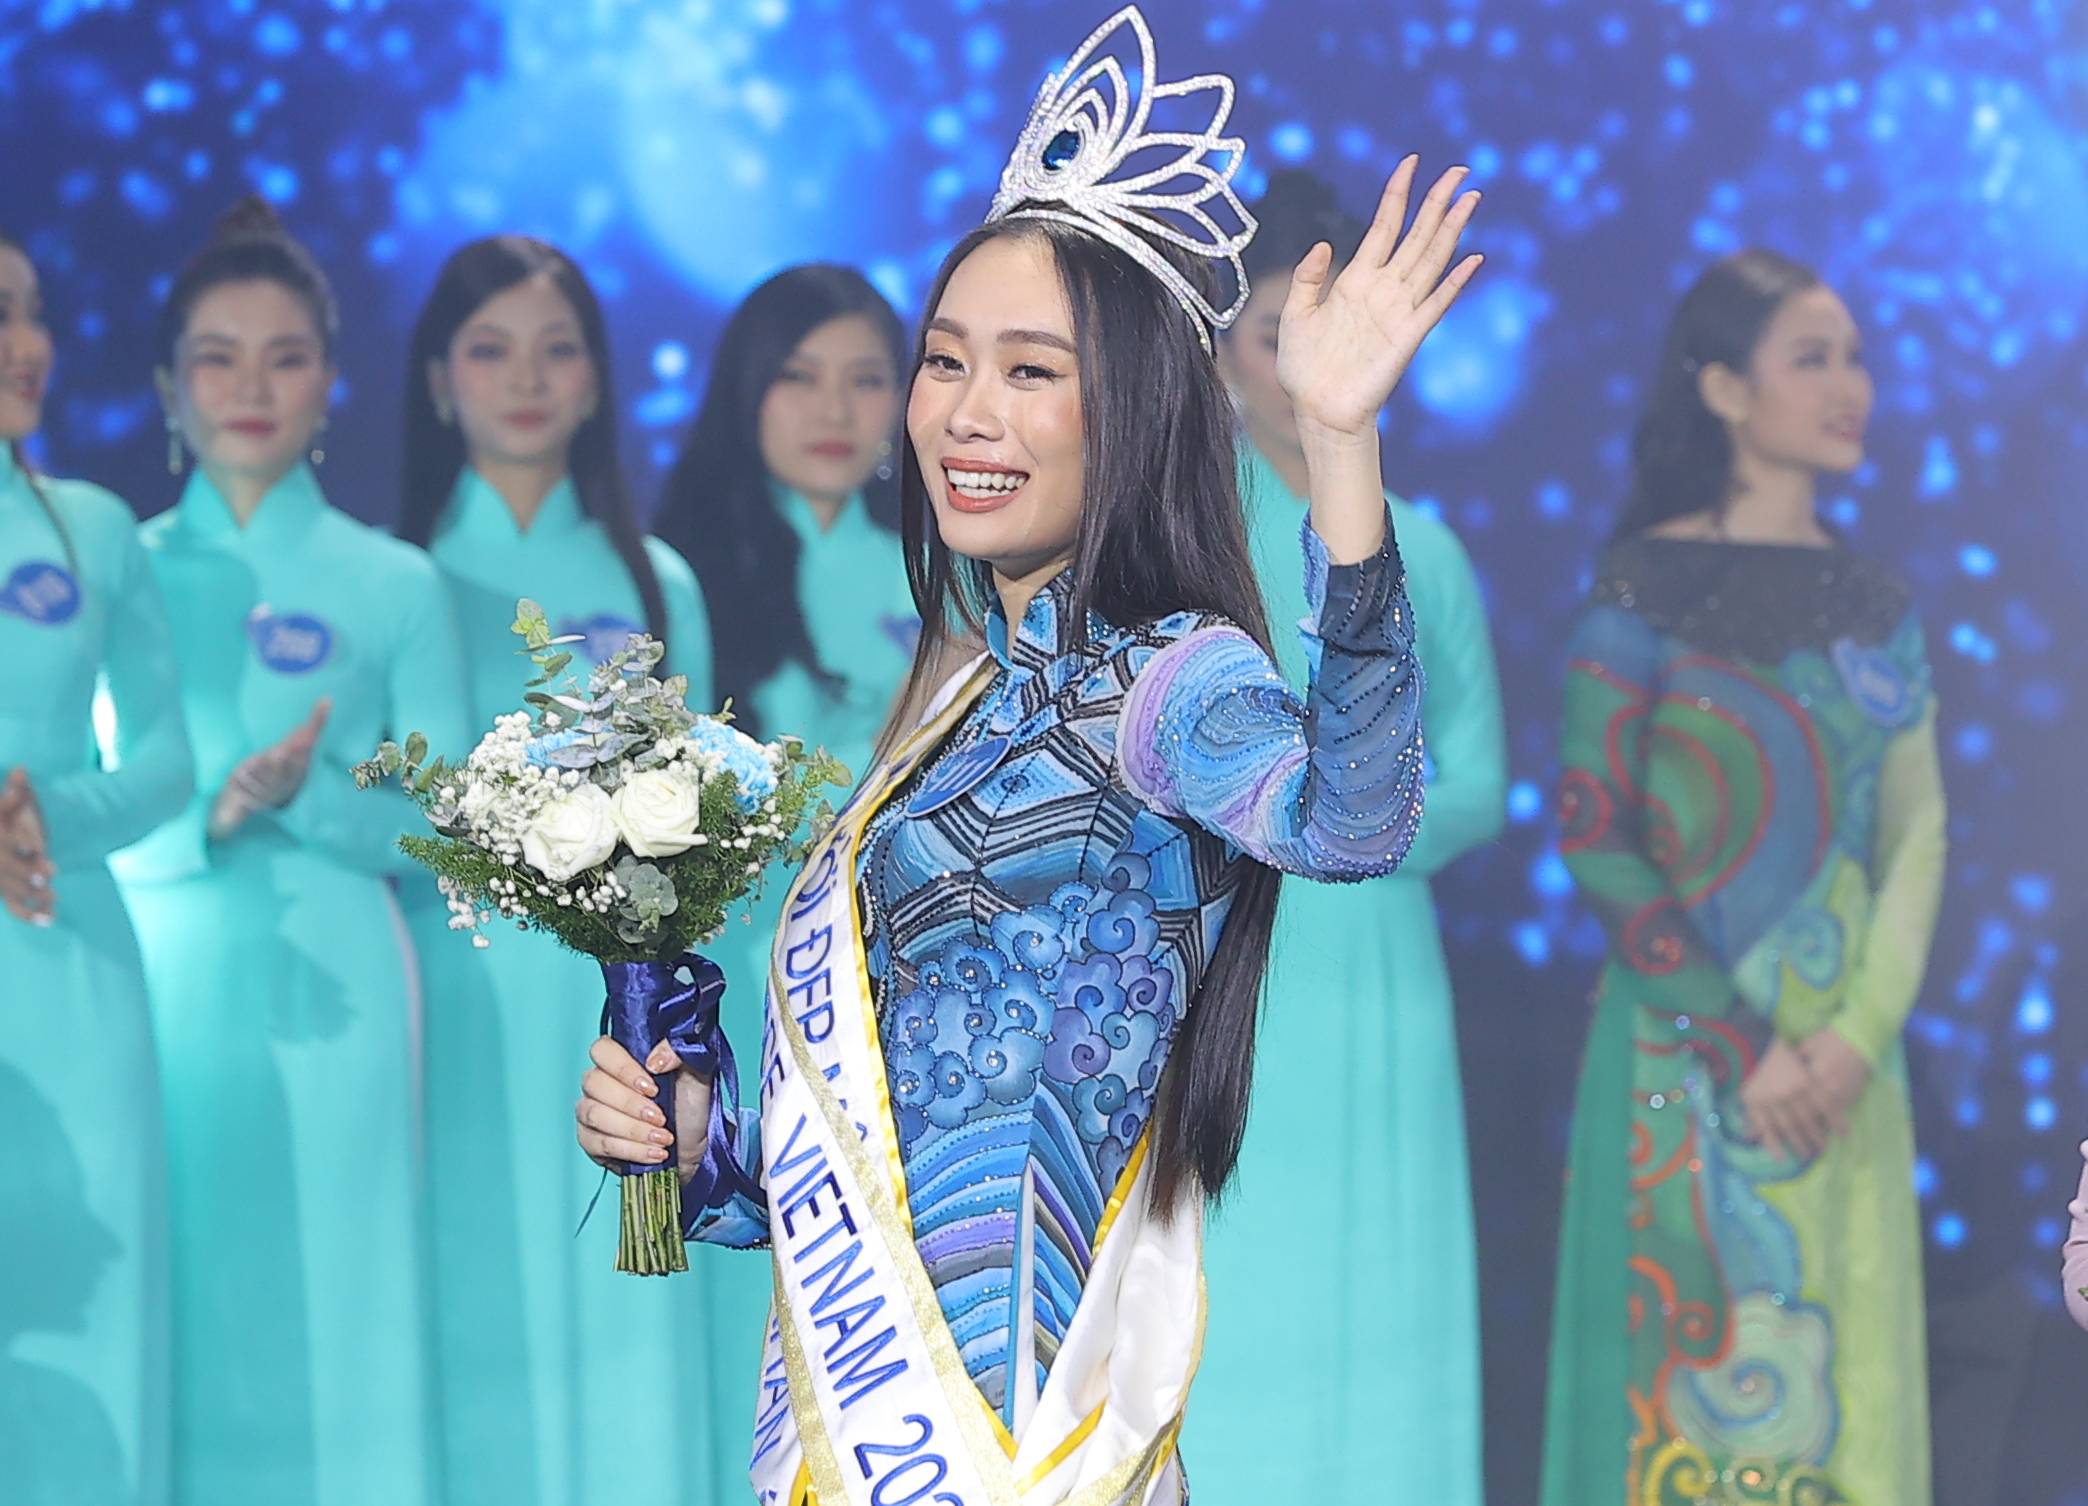 Đấu trường Miss Peace Vietnam 2022 đã tìm ra người đẹp đại diện cho sự hòa bình và hòa giải. Nguồn cảm hứng đến từ các thí sinh đầy tài năng, sắc đẹp và tình yêu thương. Hãy xem hình ảnh của những người đẹp này, cảm nhận sự tự tin và yêu đời, yêu con người hơn.